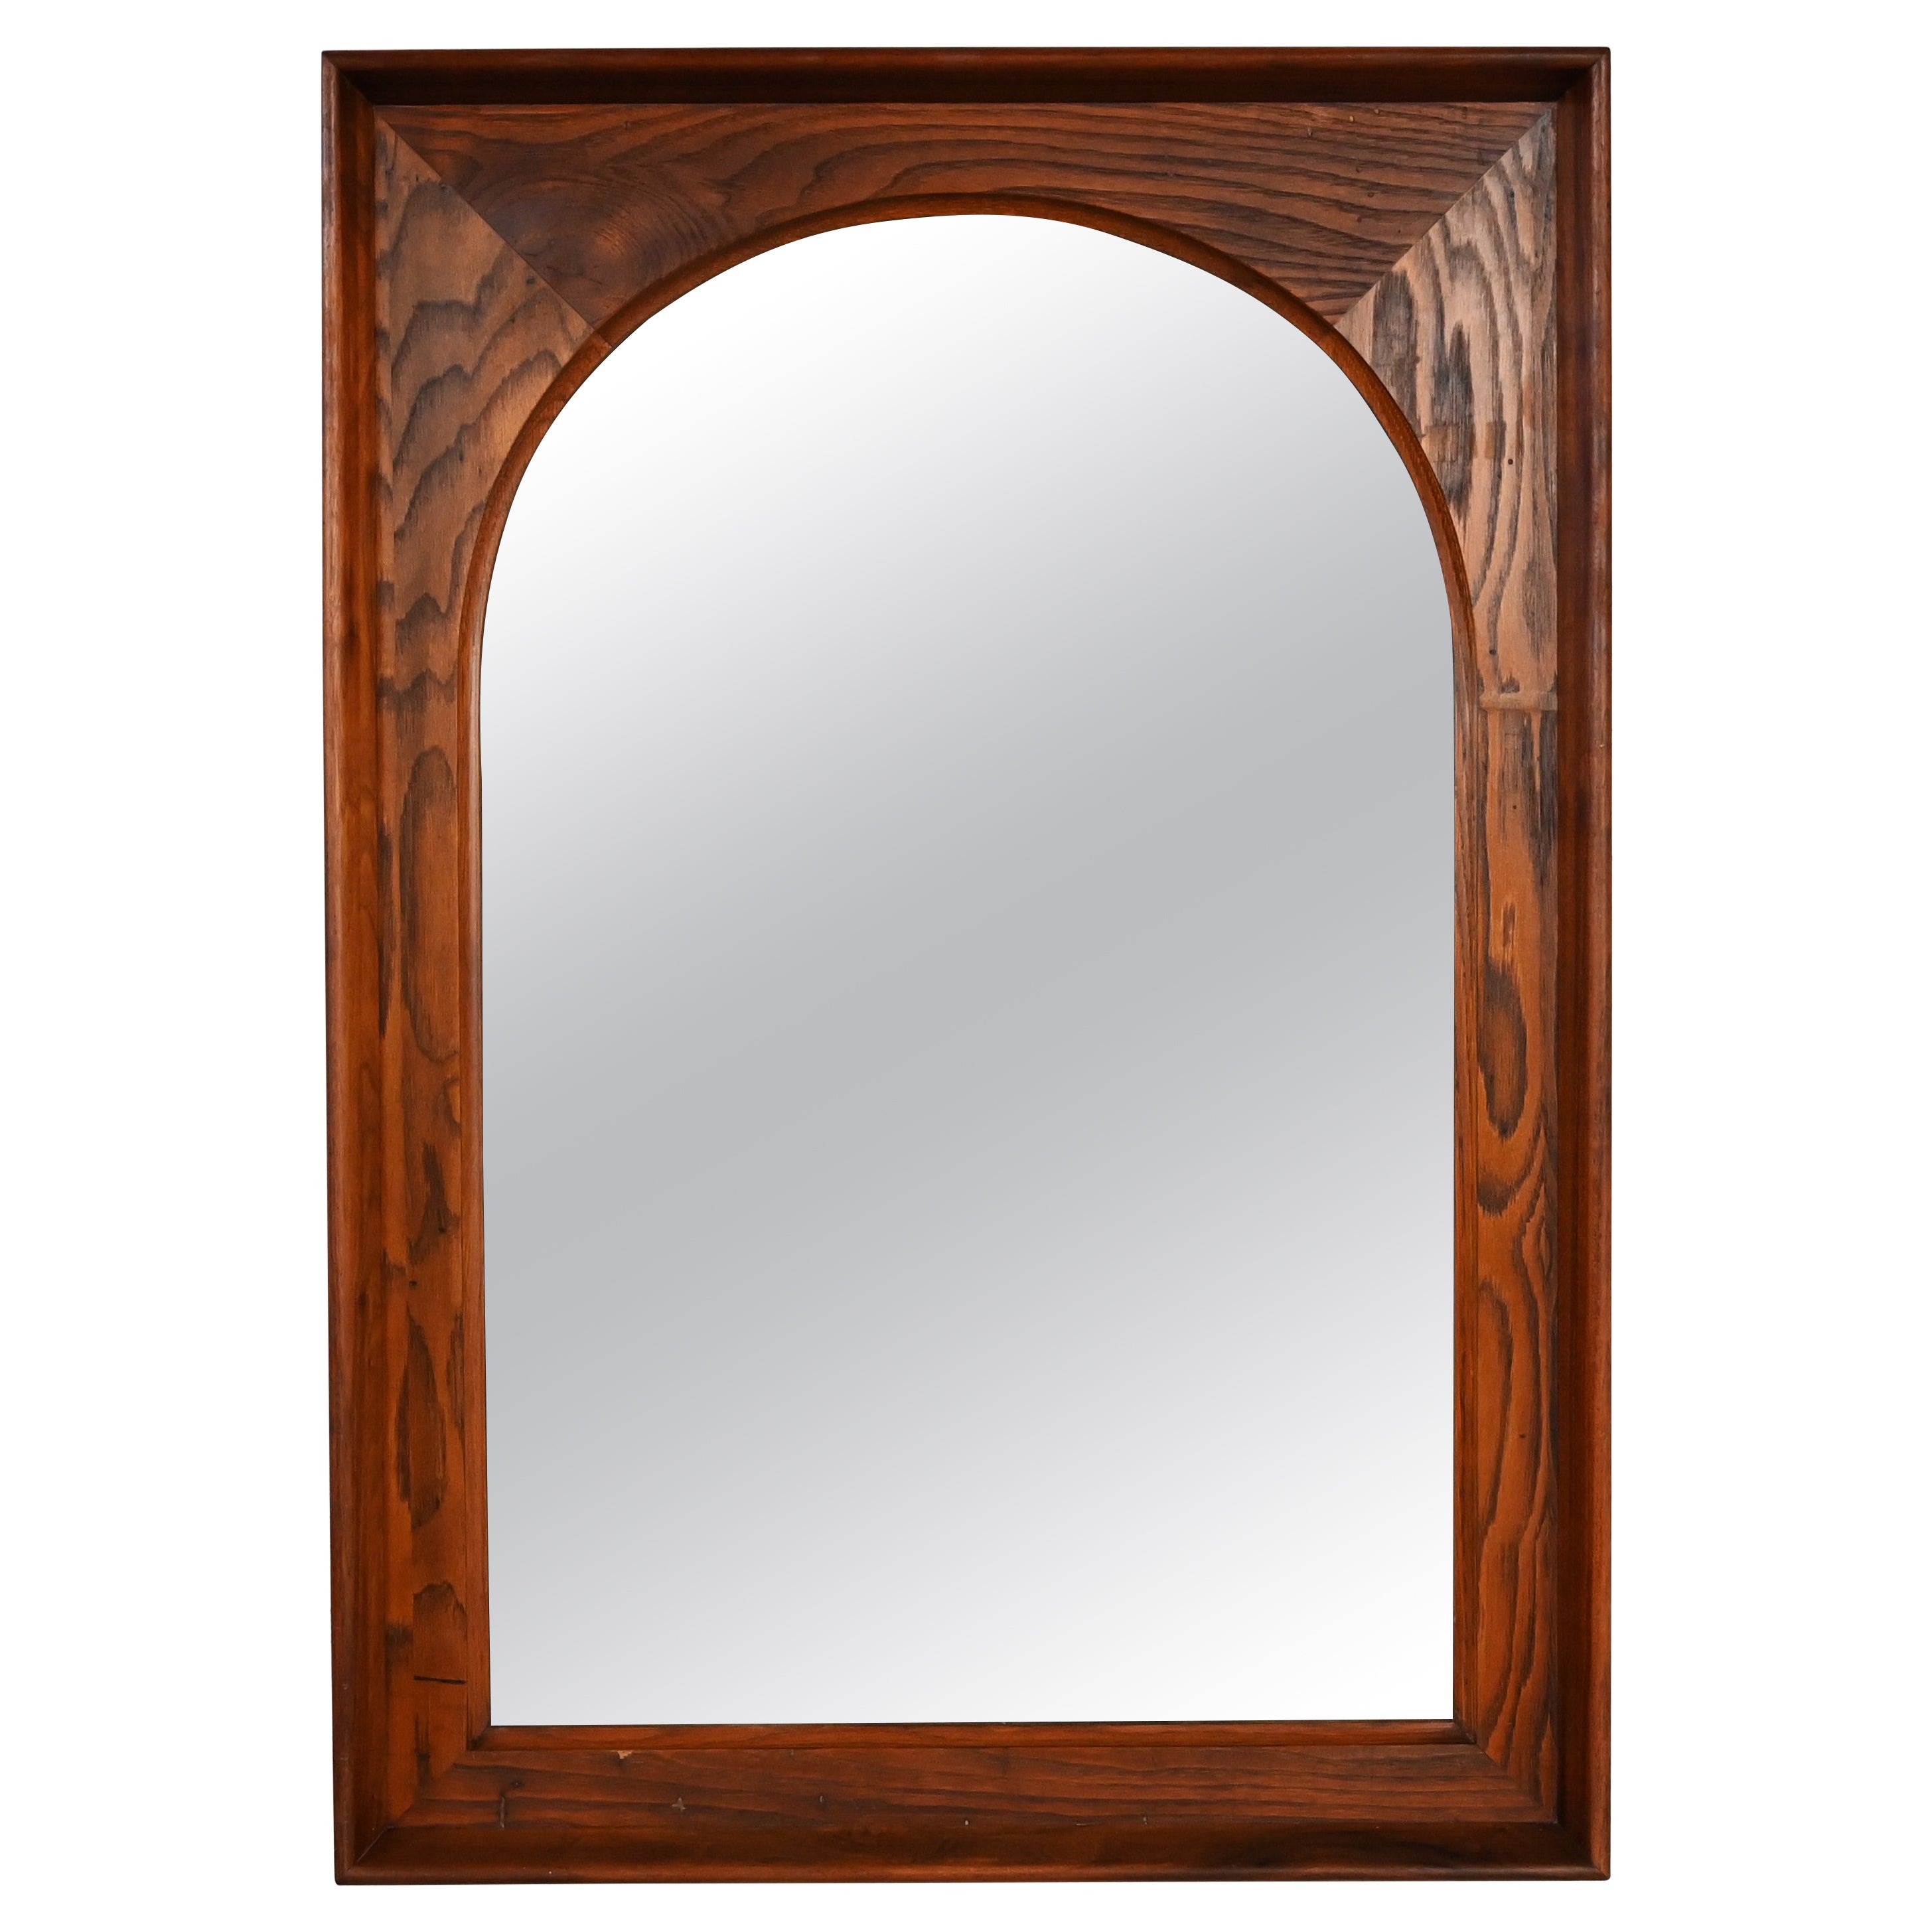 Mid Century Modern Framed Arch Mirror by Dillingham Pecky Cypress Walnut Trim